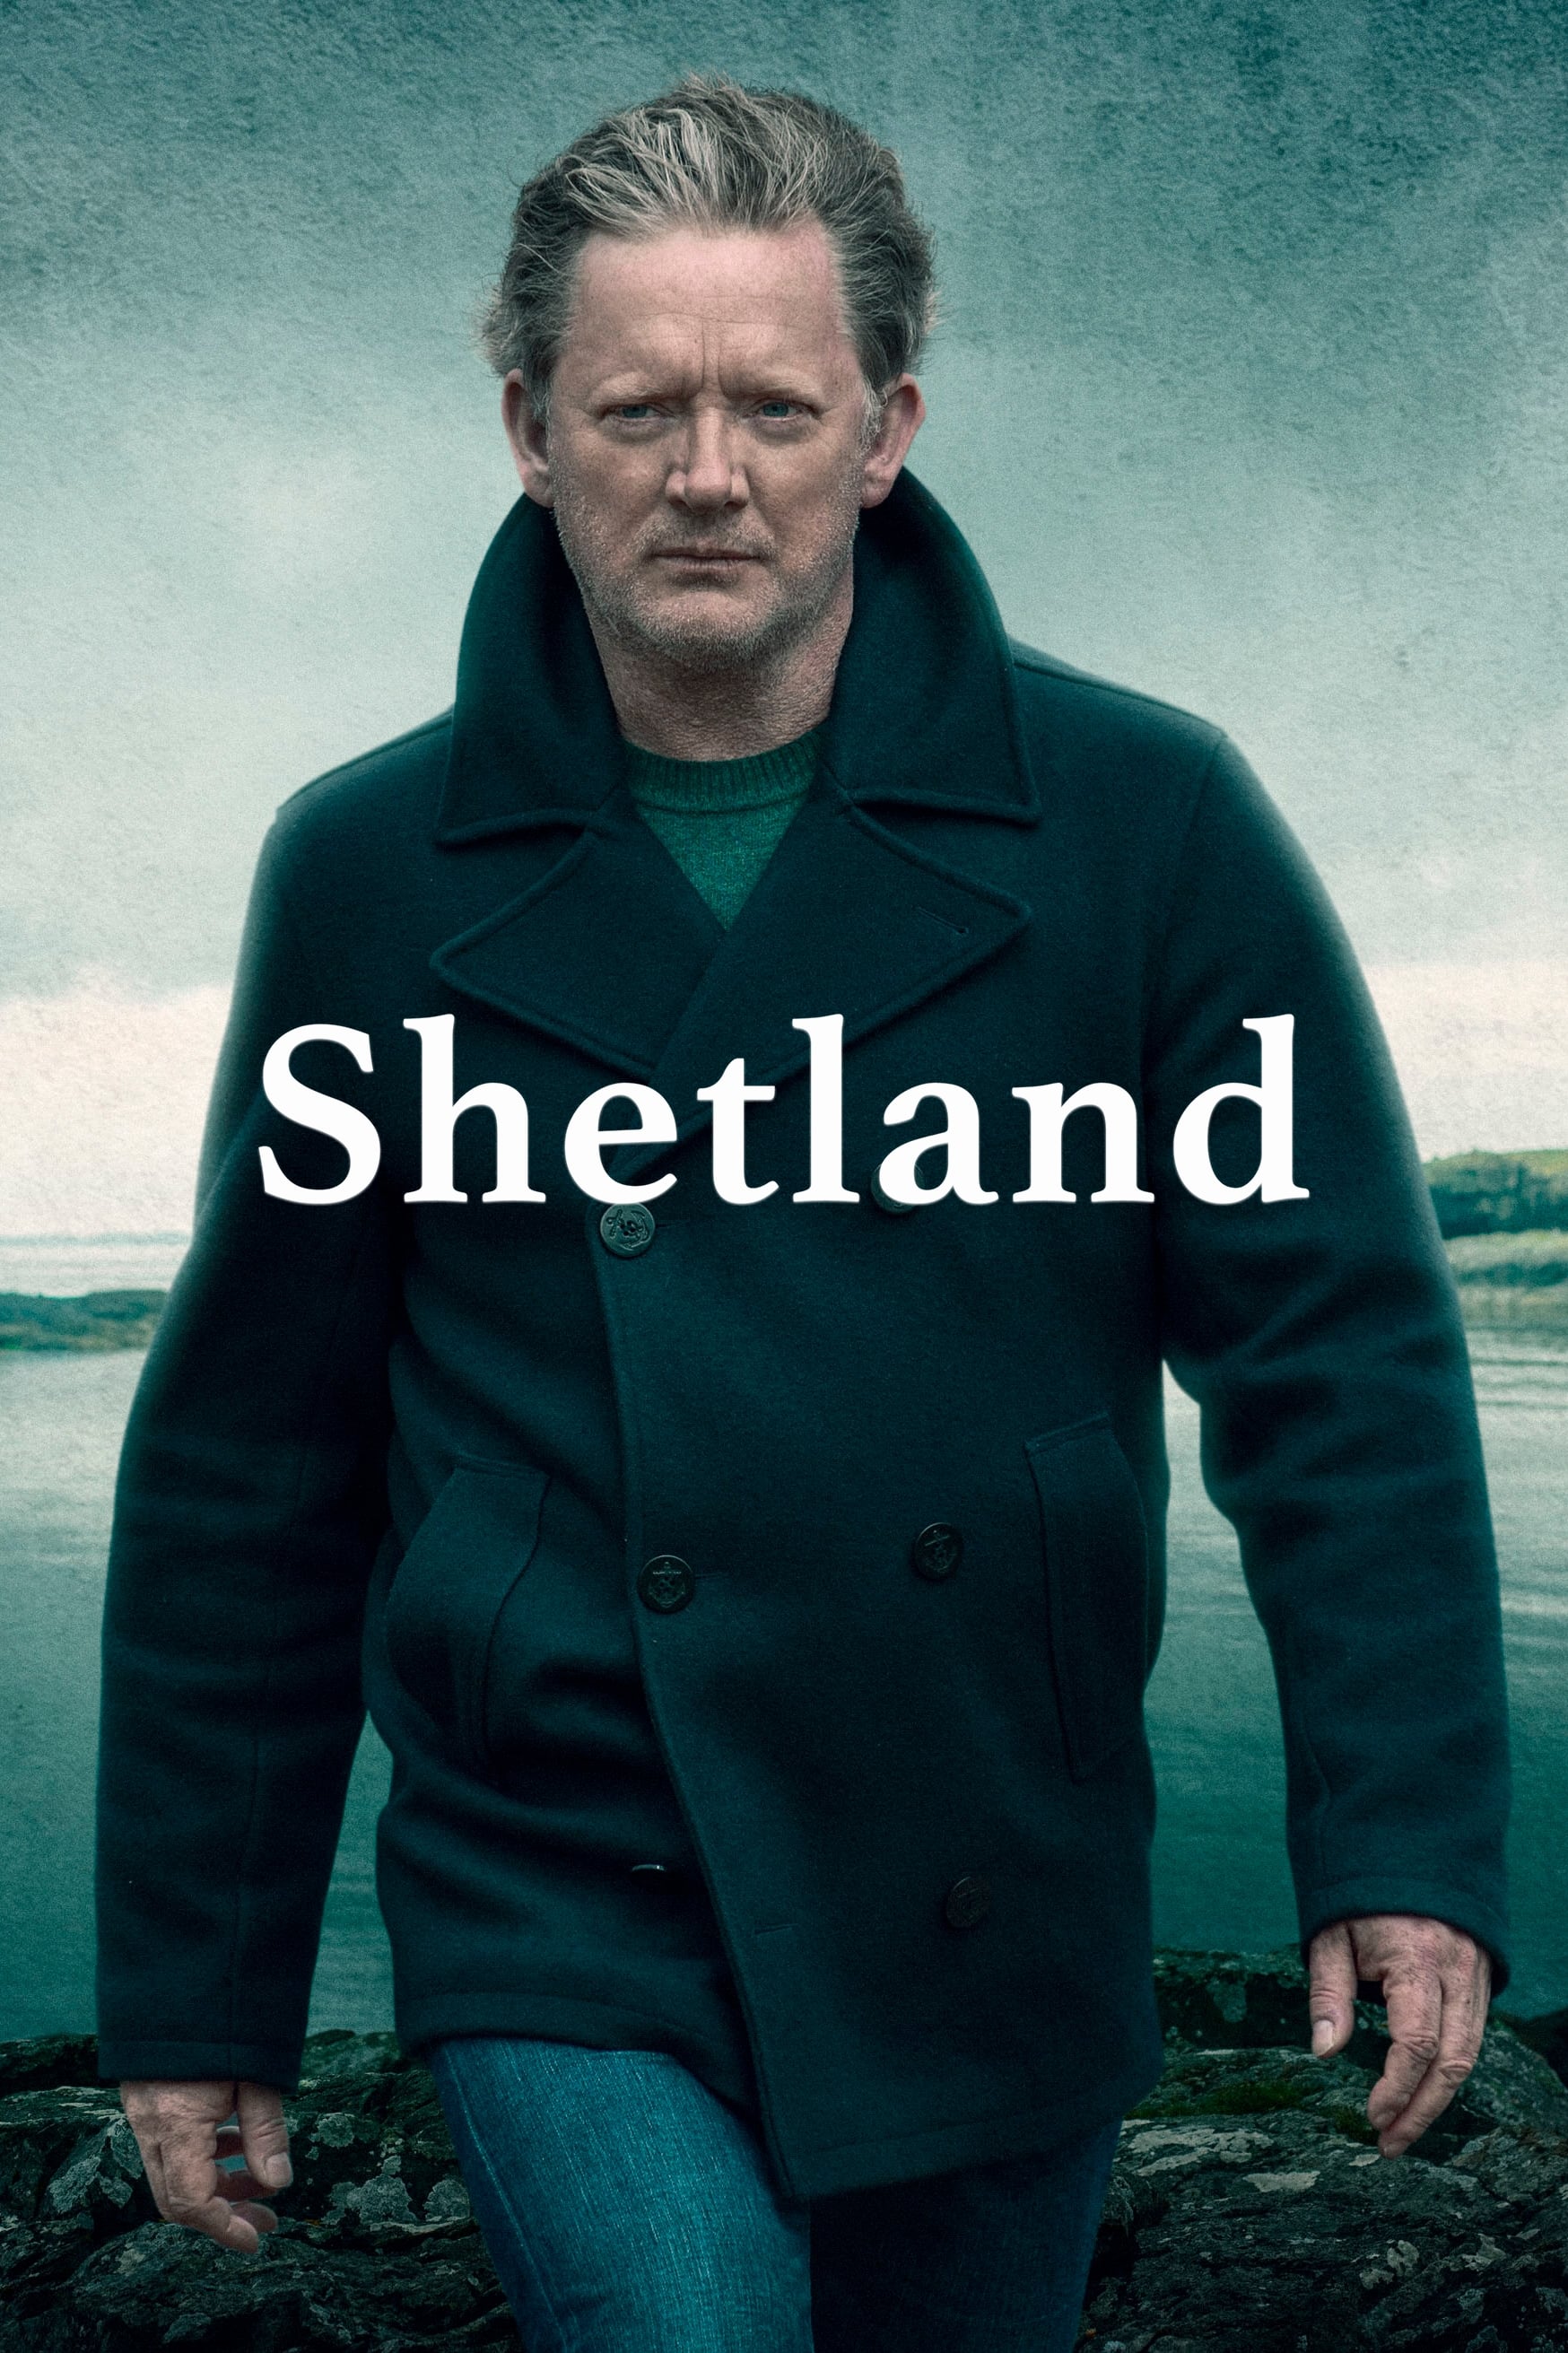 Shetland (2013)